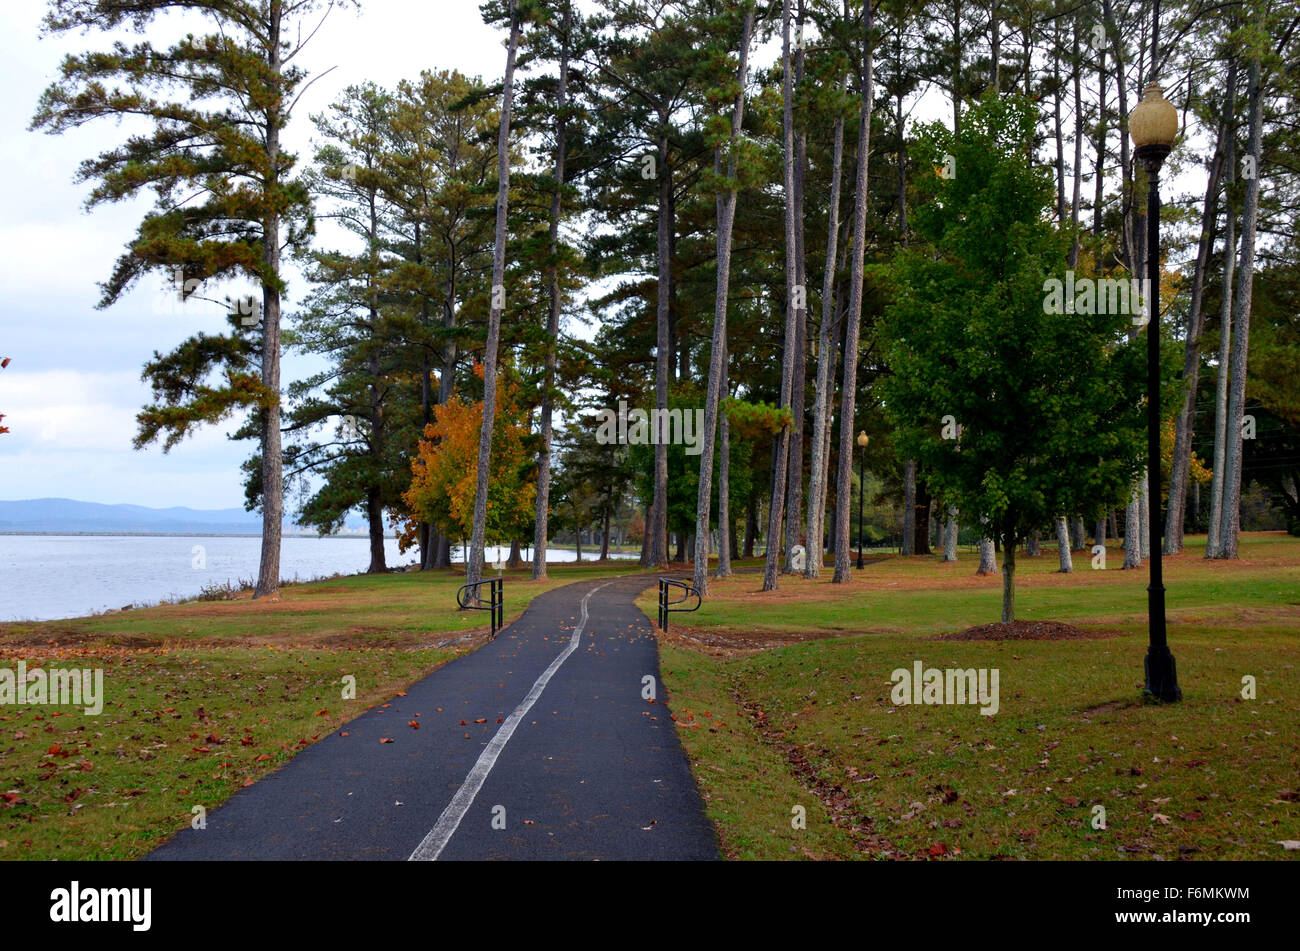 Gepflastert, walking, jogging-Pfad durch einen Park im Guntersville, AL, USA Stockfoto